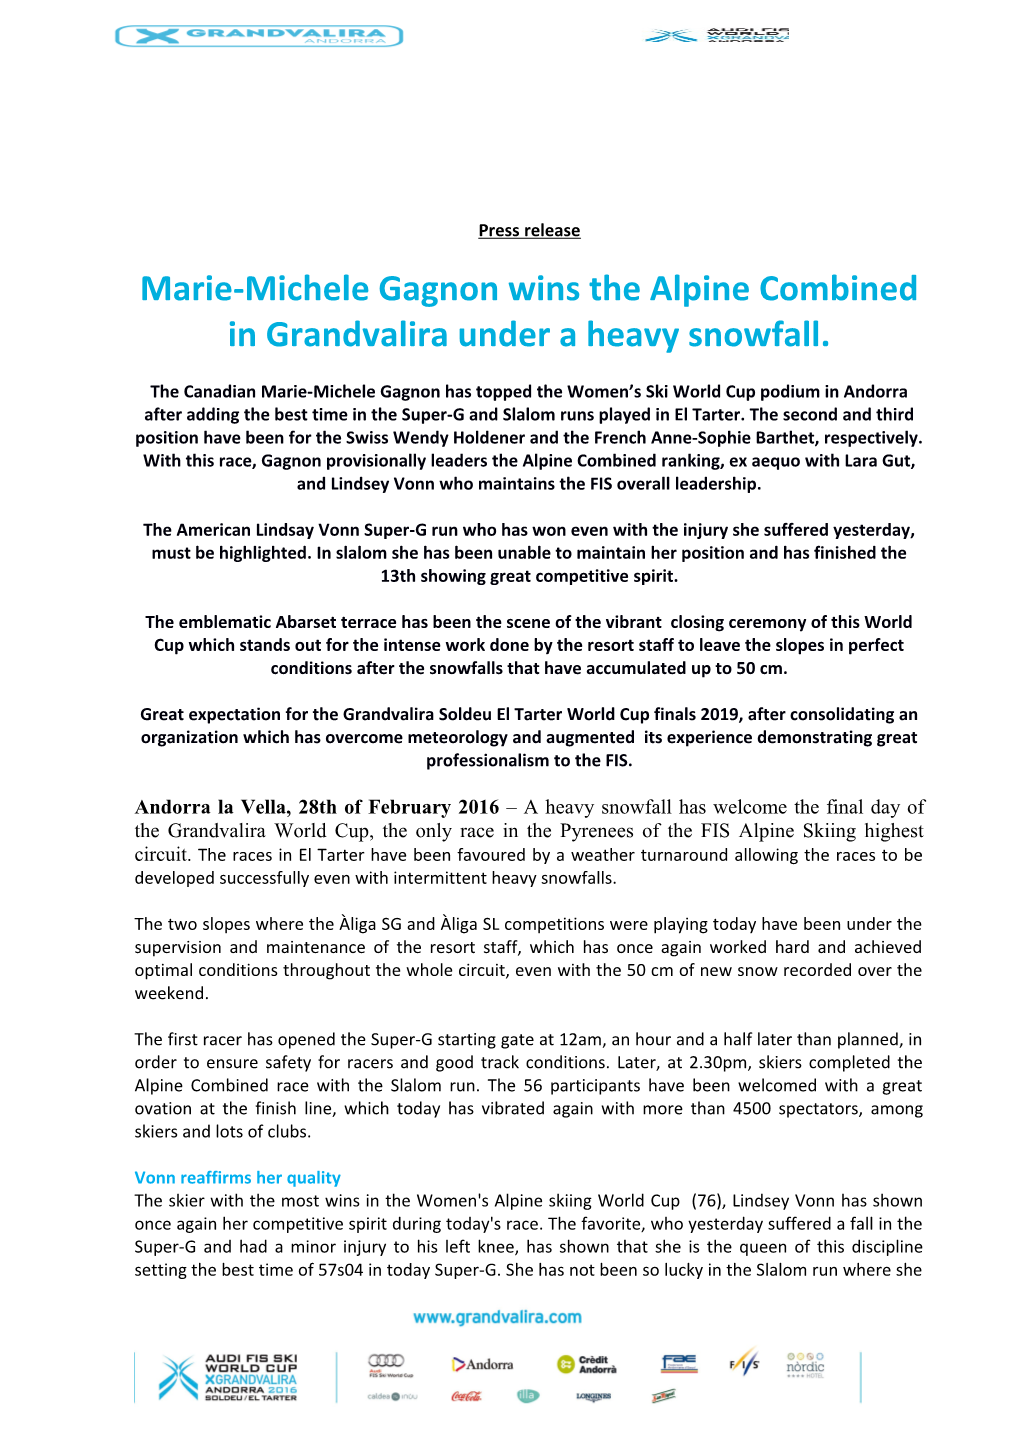 Marie-Michele Gagnon Wins the Alpine Combined in Grandvalira Under a Heavy Snowfall